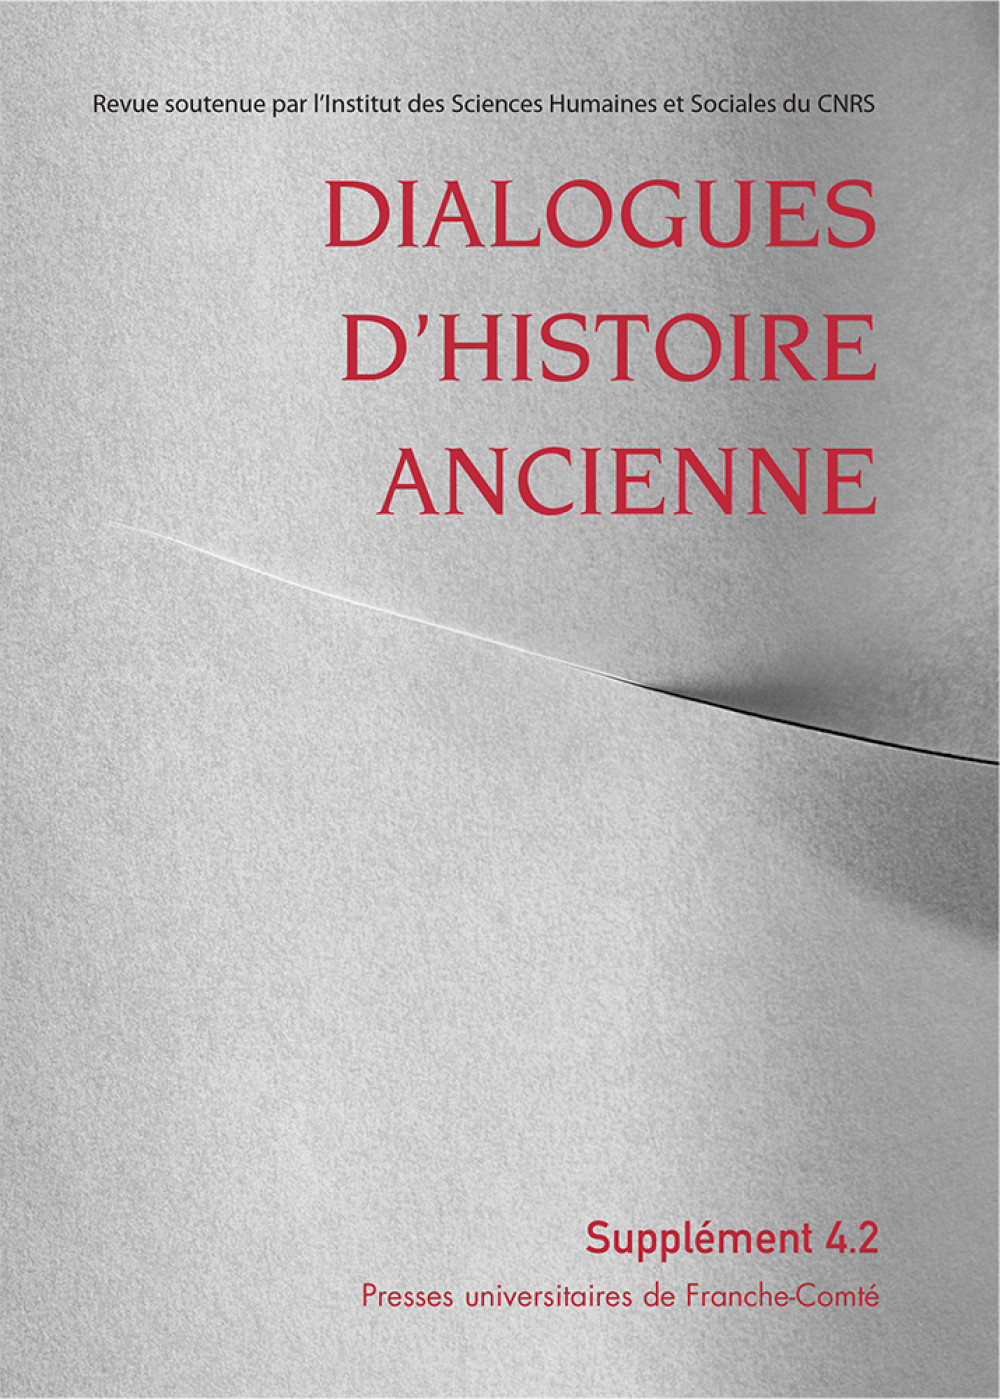 Dialogues d'Histoire Ancienne supplément 4